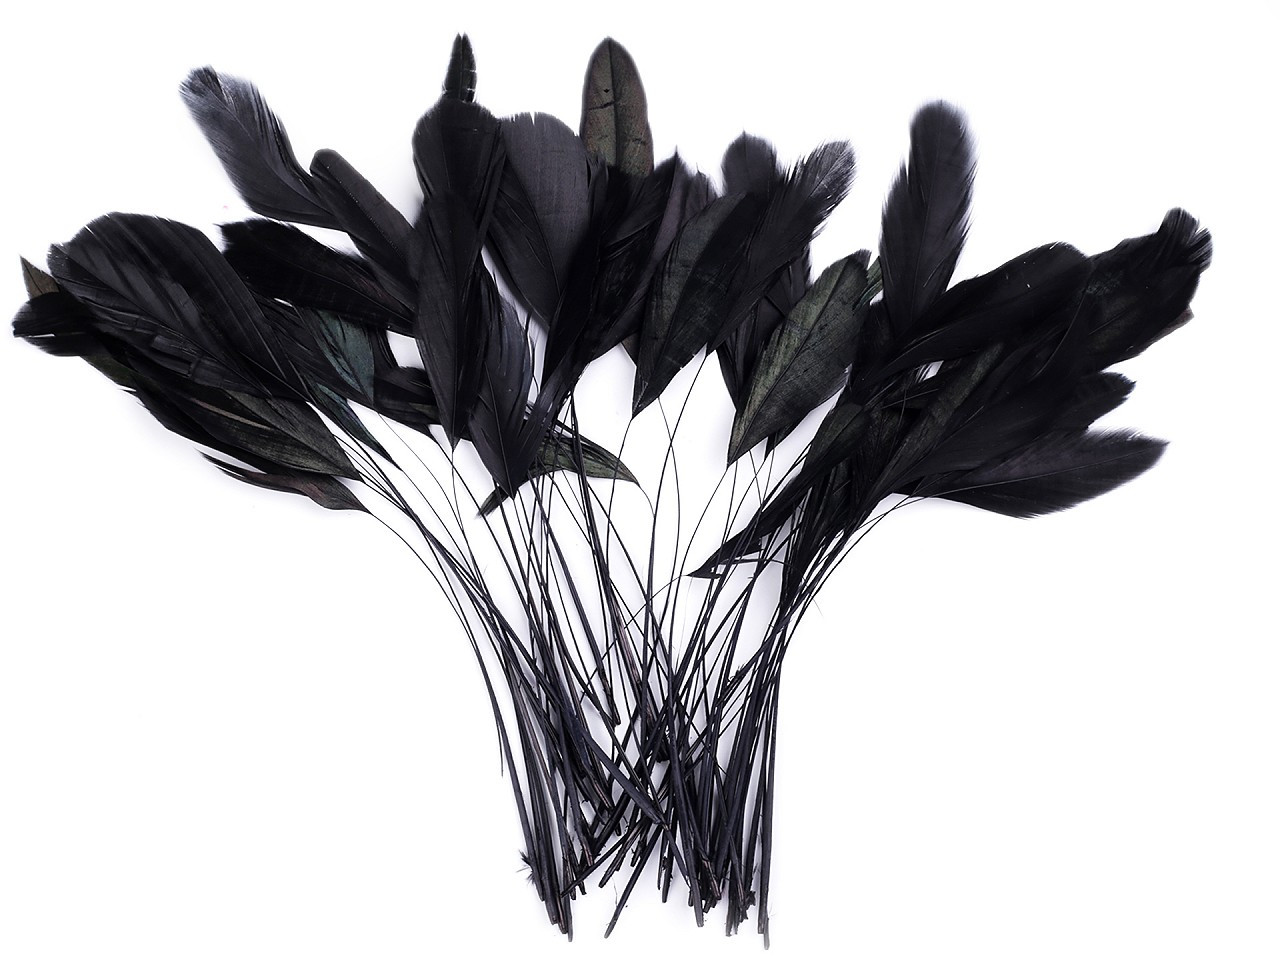 Kohoutí peří délka 13-18 cm, barva 8 černá